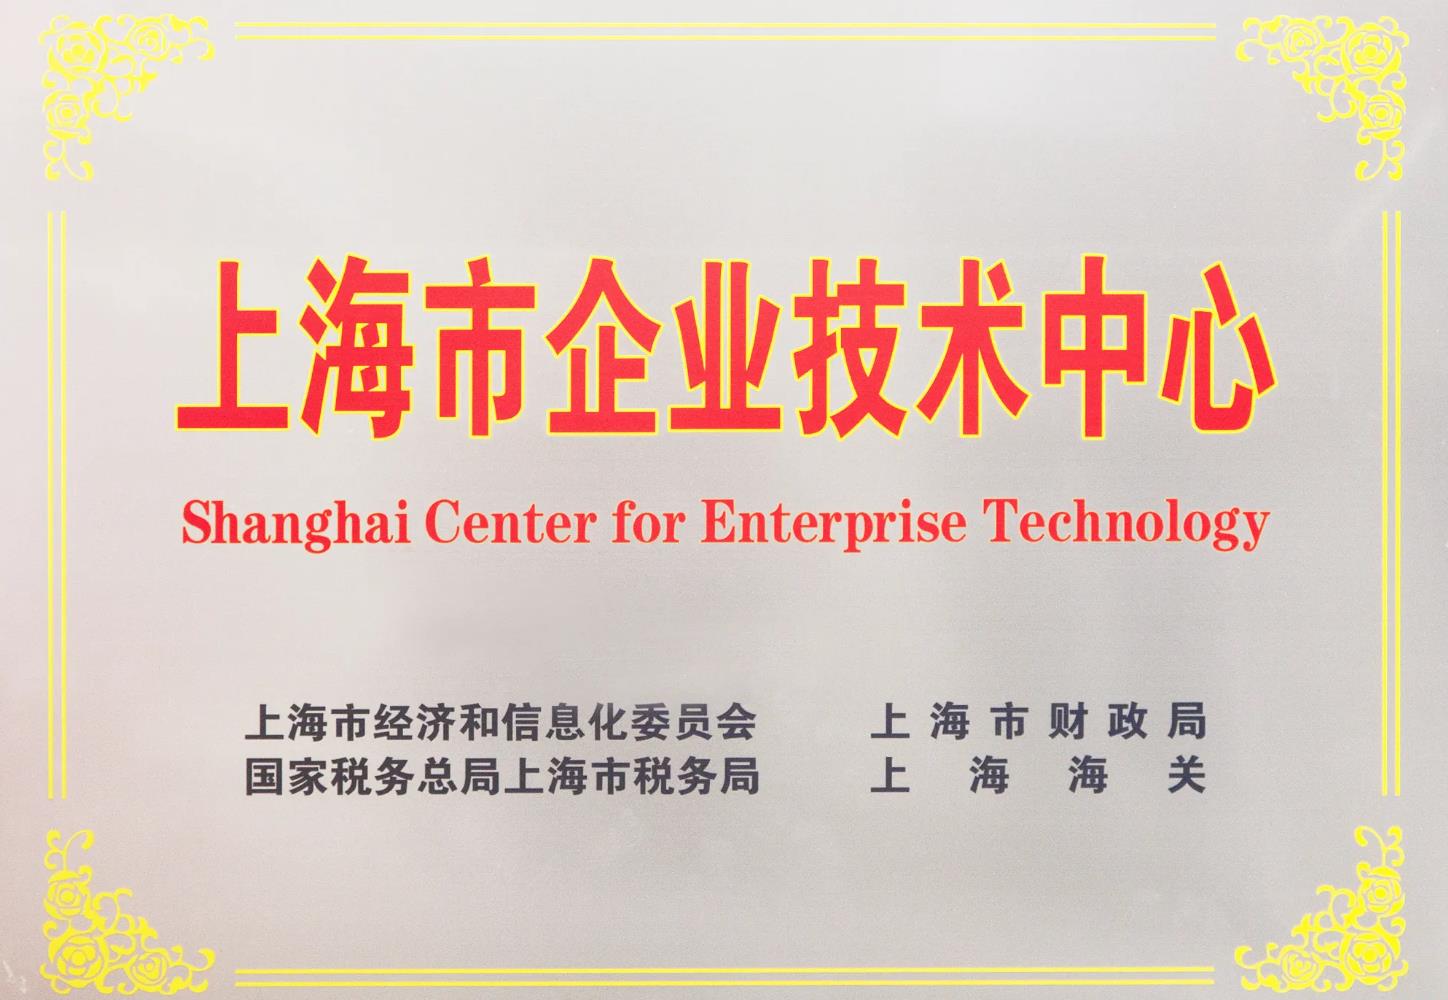 喜讯! 康希通信研发中心被成功认定为 上海市企业技术中心